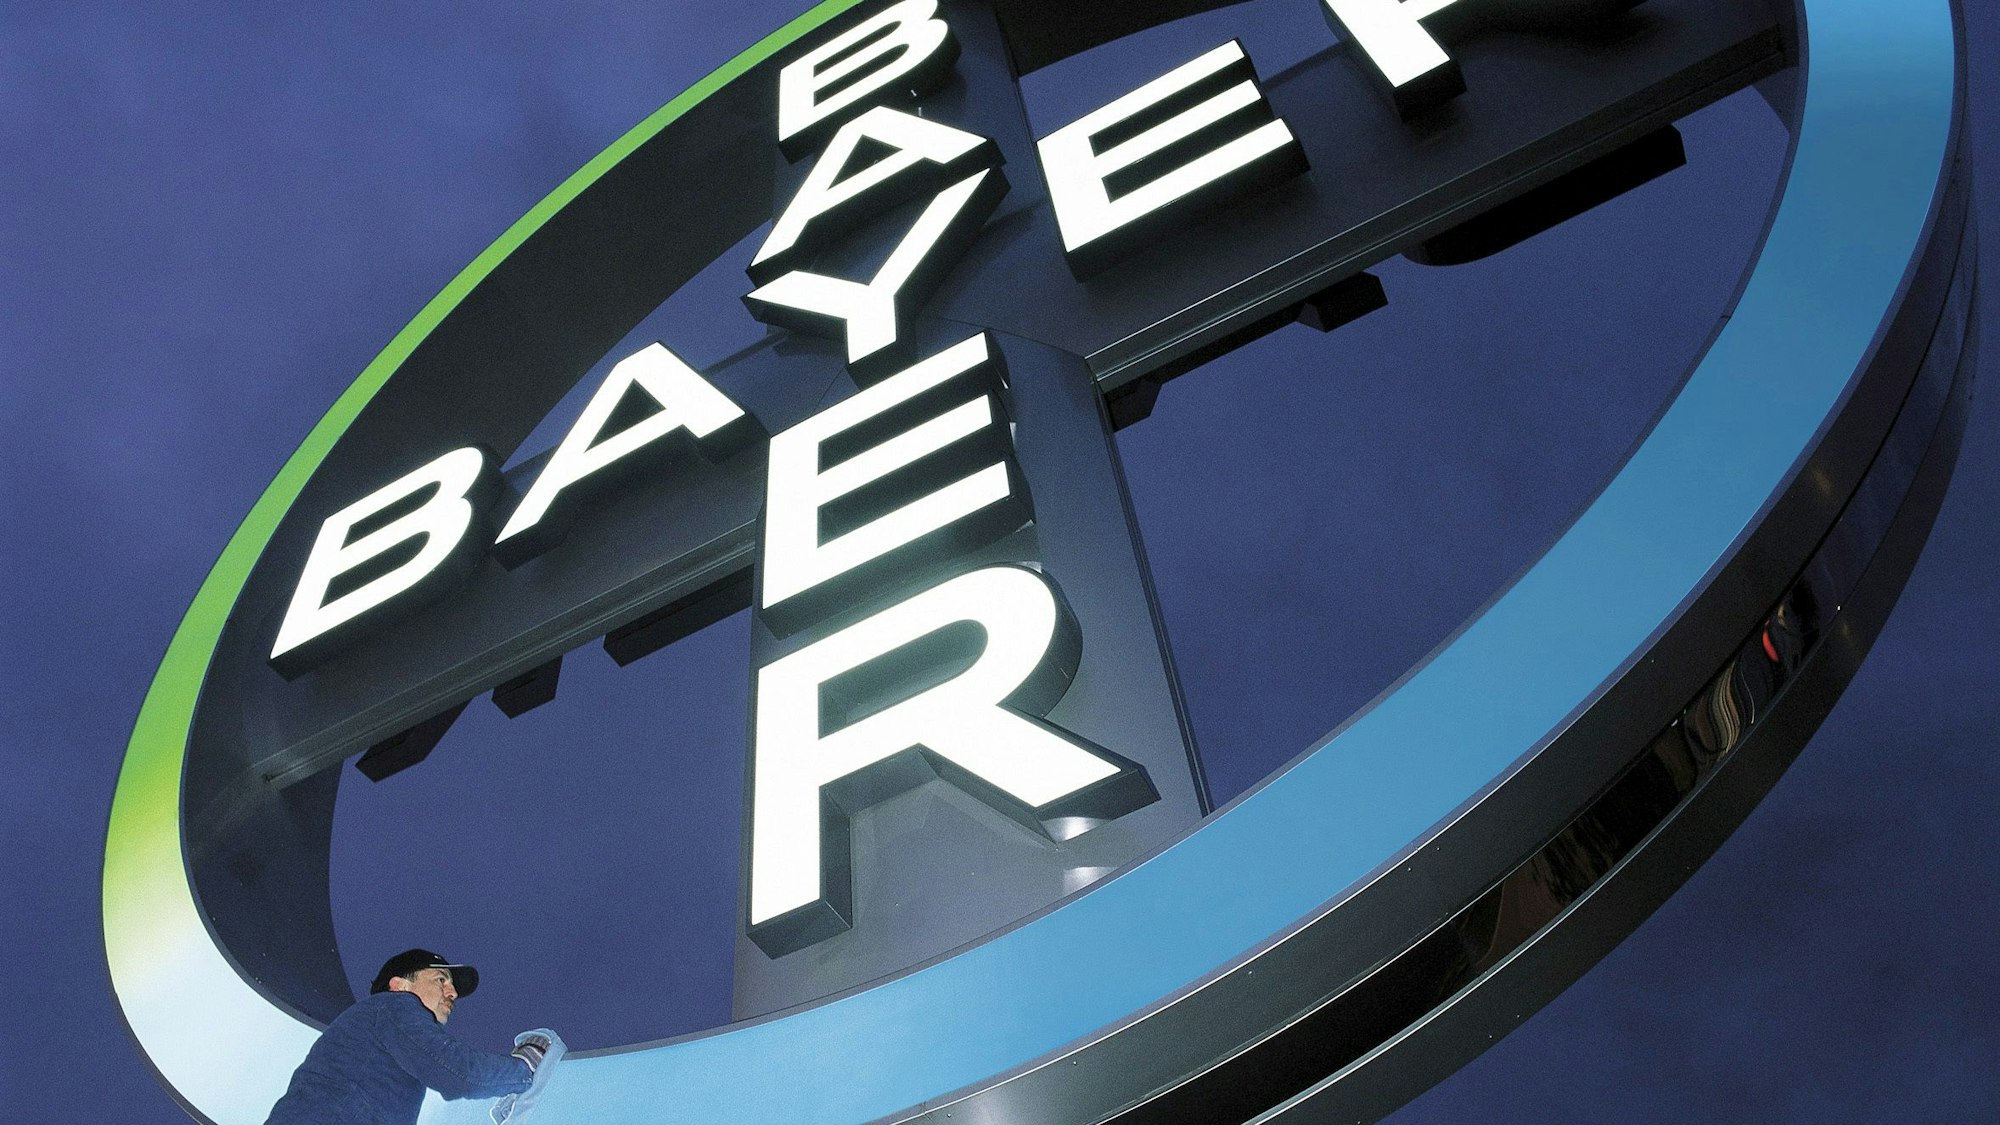 Das Bayer-Kreuz am Köln-Bonner Flughafen wird geputzt